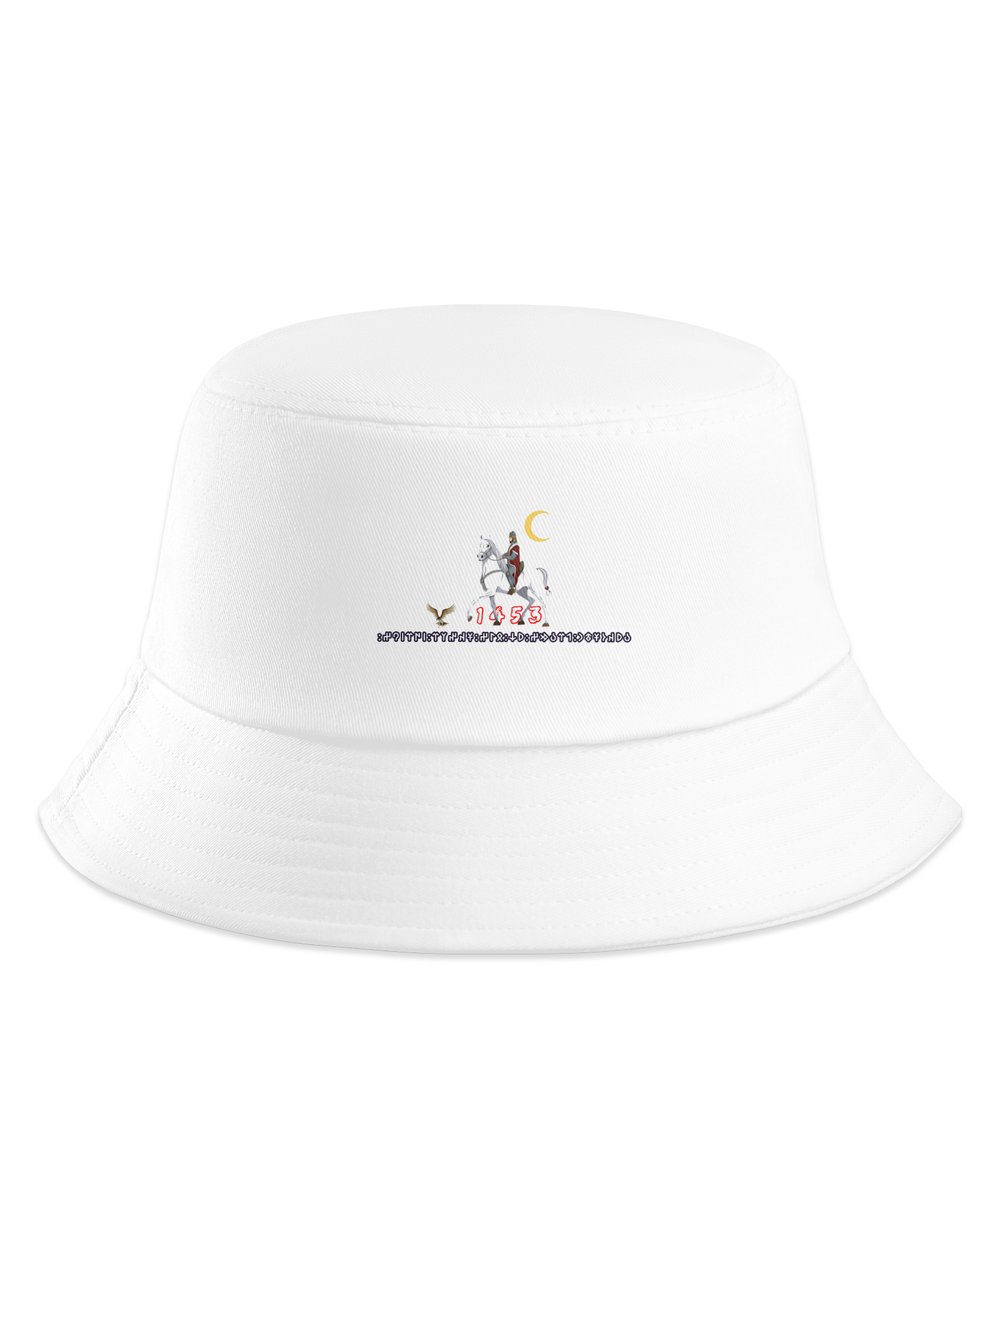 Büyük Türk Bucket Şapka 9630952